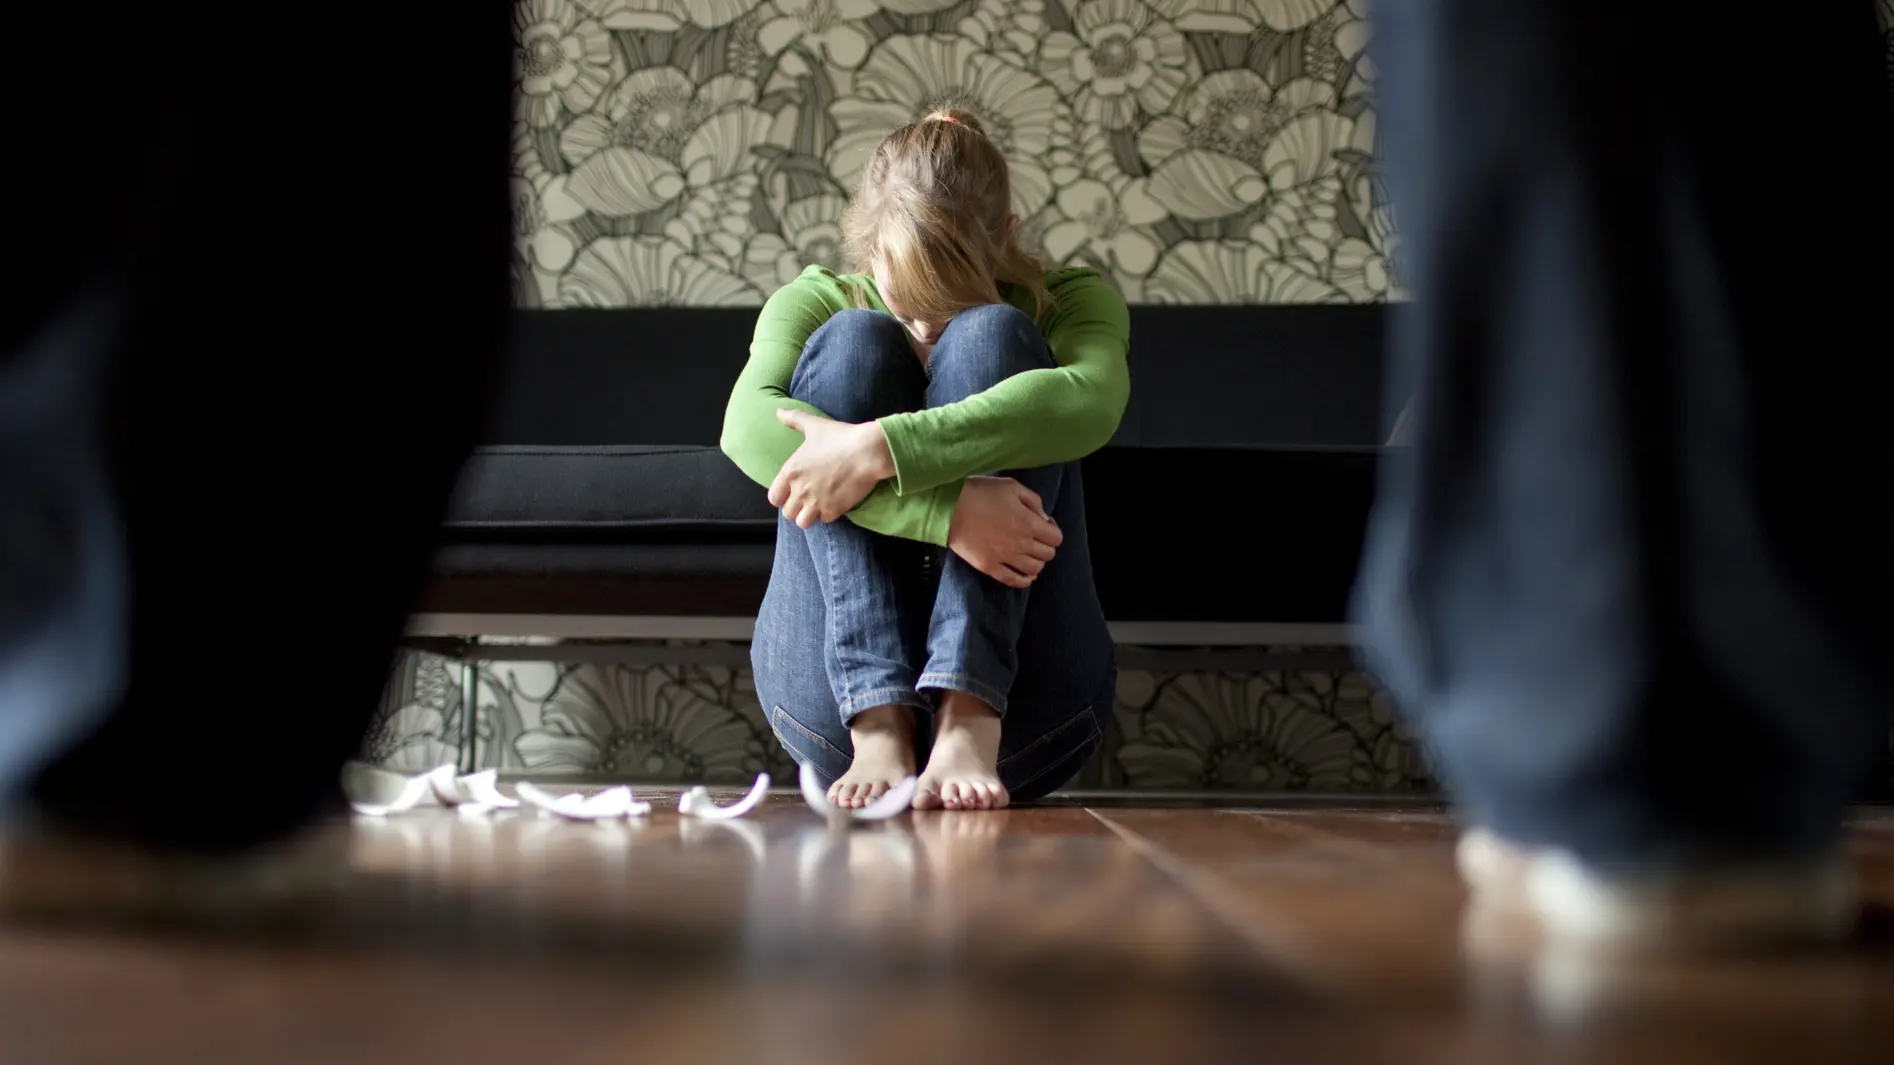 Symbolbild häusliche Gewalt: Eine junge Frau wird bedroht.